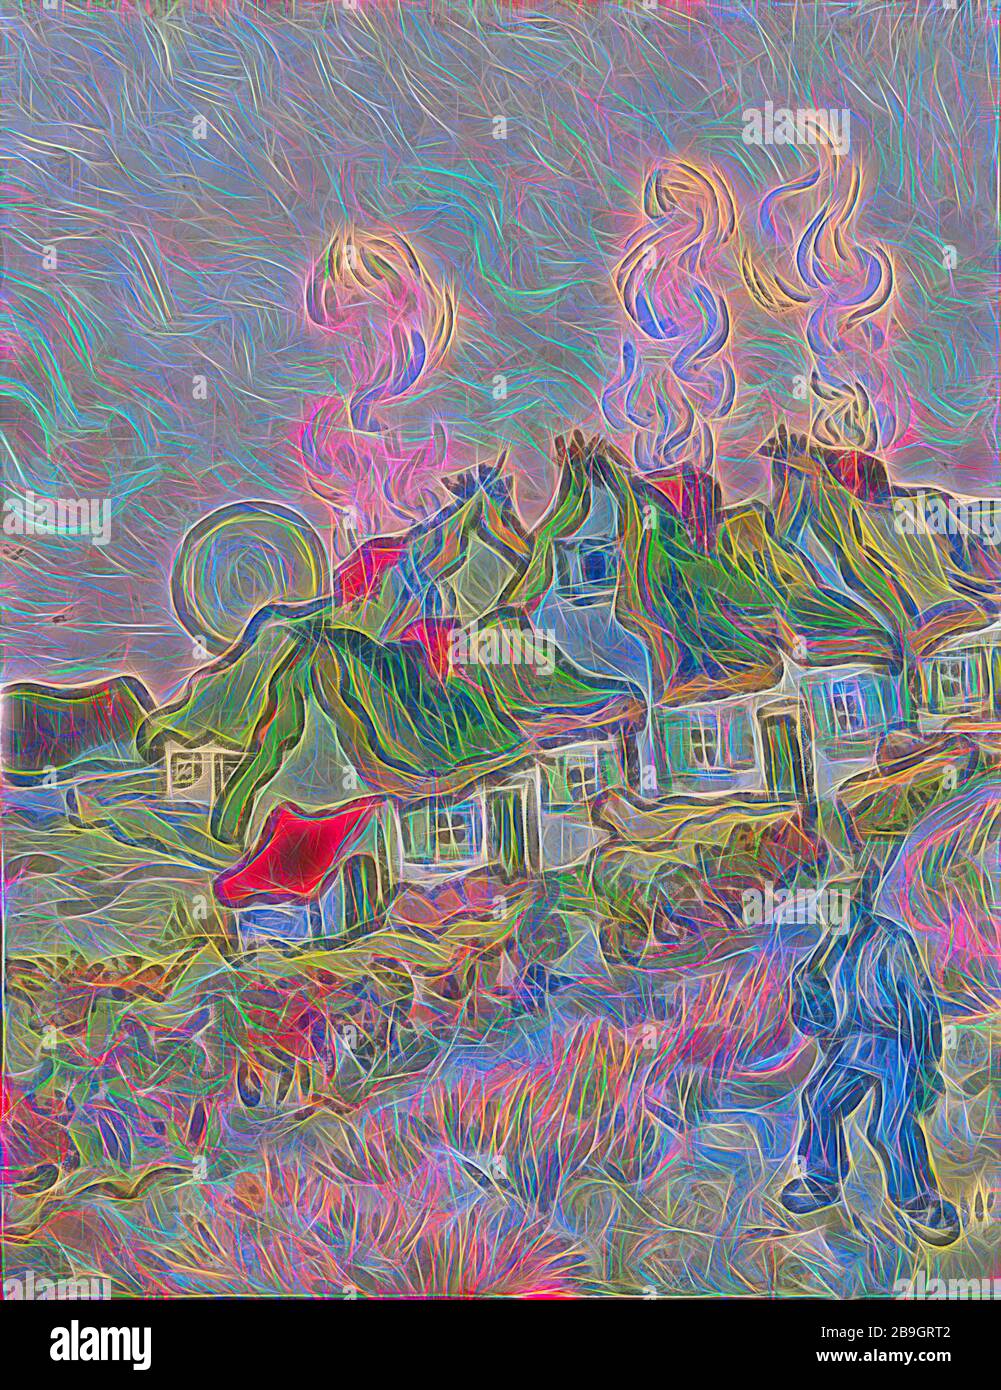 Vincent van Gogh: Maisons et figure, Vincent van Gogh, 1890, huile sur toile, Van Gogh a peint ce paysage au cours de la dernière année de sa vie quand il était patient à un asile à Saint-Remy, près d'Arles. Avec un accès limité à l'extérieur, Van Gogh a dû peindre ce qui pourrait être vu hors de la fenêtre, ou, comme c'est le cas ici, ce qu'il pourrait imaginer dans son esprit. Cette peinture est un souvenir de ses Pays-Bas natifs, montrant les cottages à chaume qui ont parsemé le paysage hollandais et qui ont été un sujet fréquent de ses premières toiles. Pour Van Gogh, ces structures rurales représentaient un plus simple, plus aut Banque D'Images